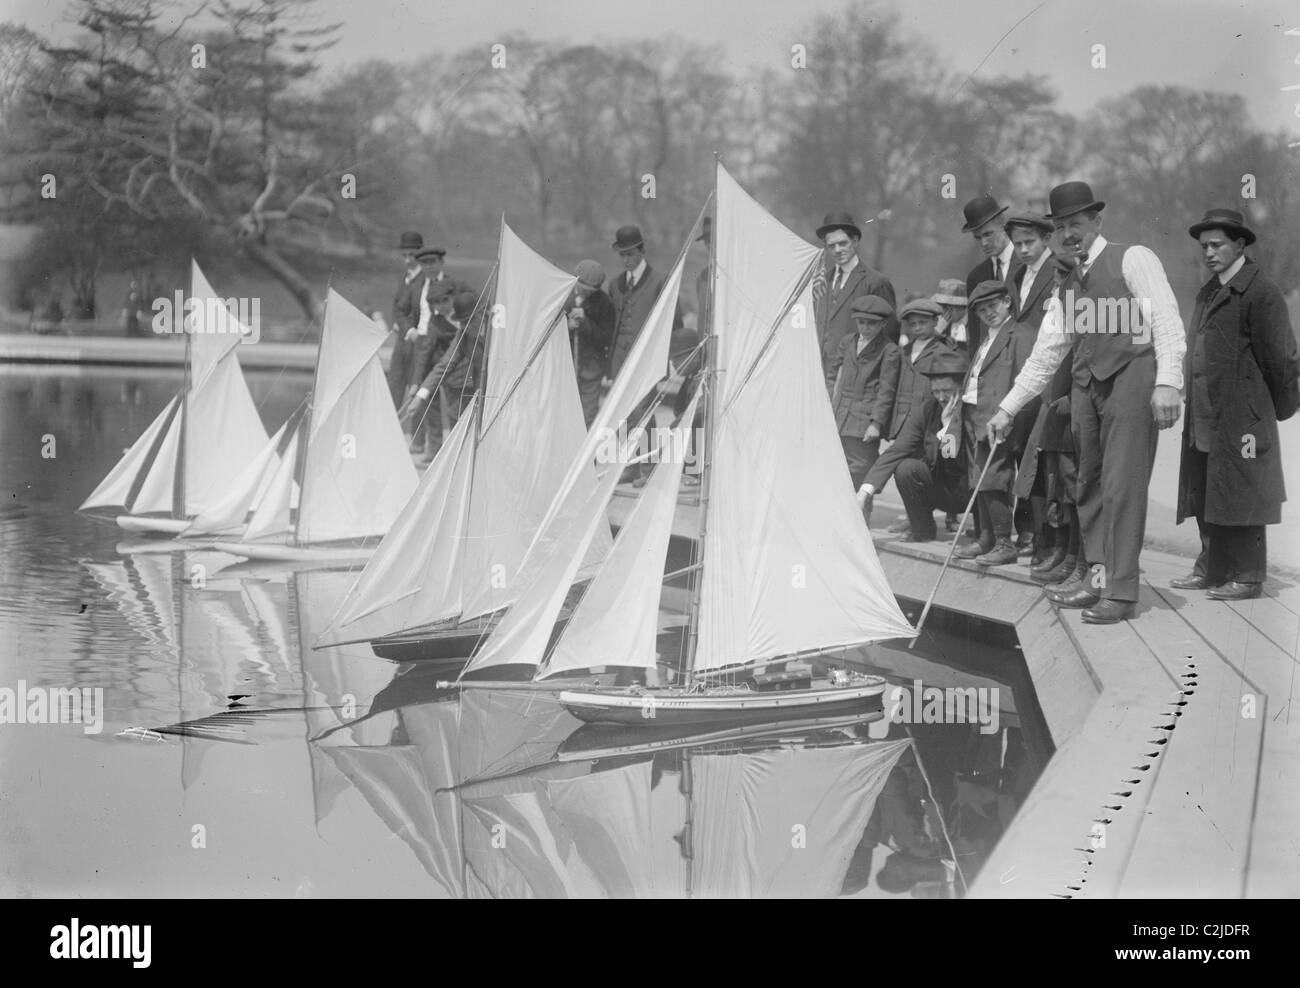 Spielzeug-Yachten sind der Stolz von Central Park-Enthusiasten, wie sie sie in einem Park Teich Rennen Stockfoto